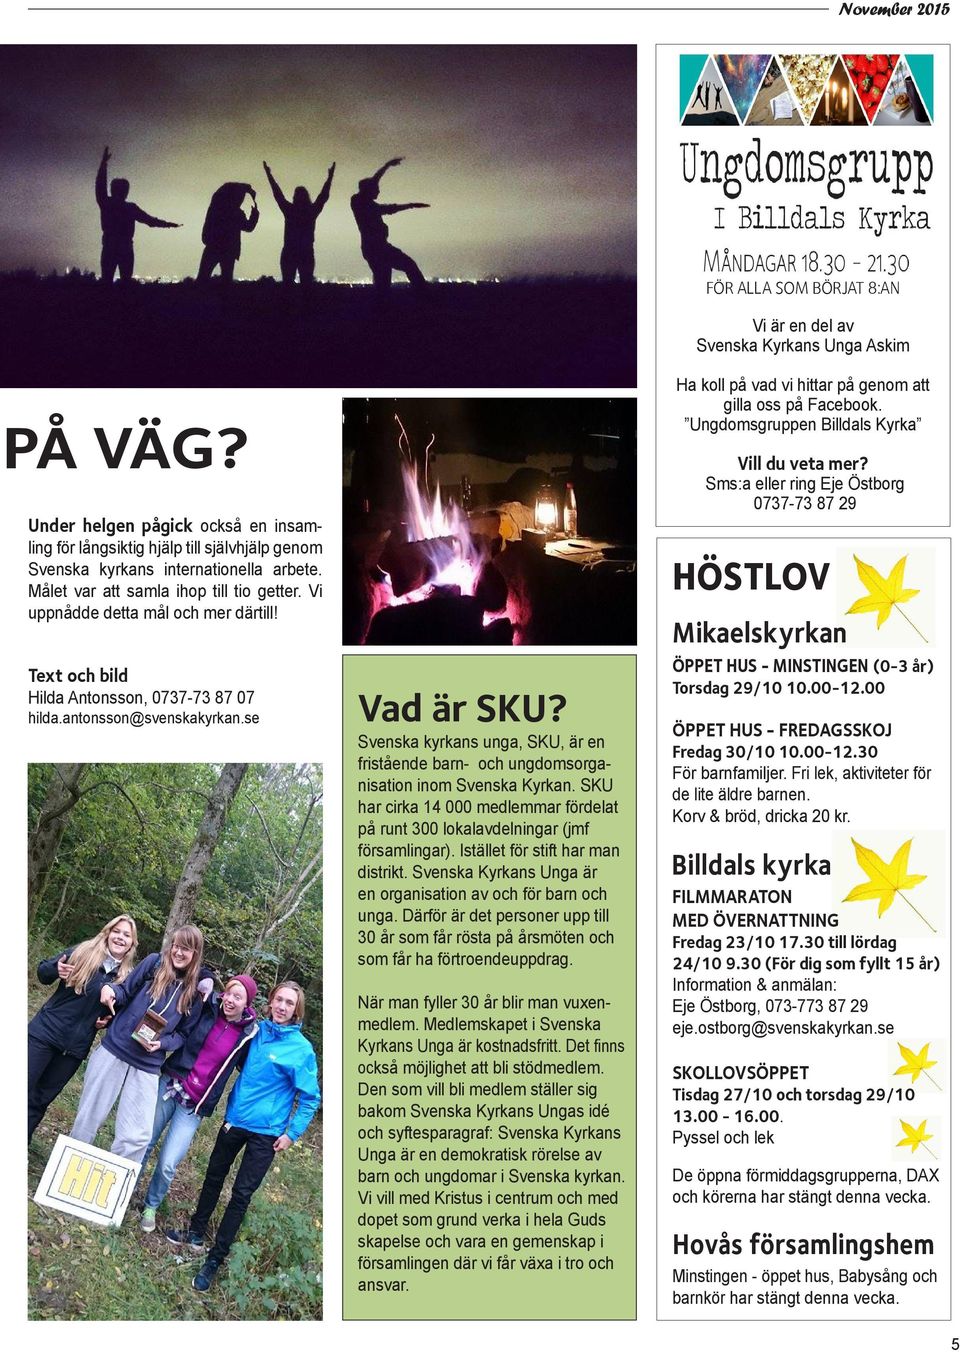 Svenska kyrkans unga, SKU, är en fristående barn- och ungdomsorganisation inom Svenska Kyrkan. SKU har cirka 14 000 medlemmar fördelat på runt 300 lokalavdelningar (jmf församlingar).